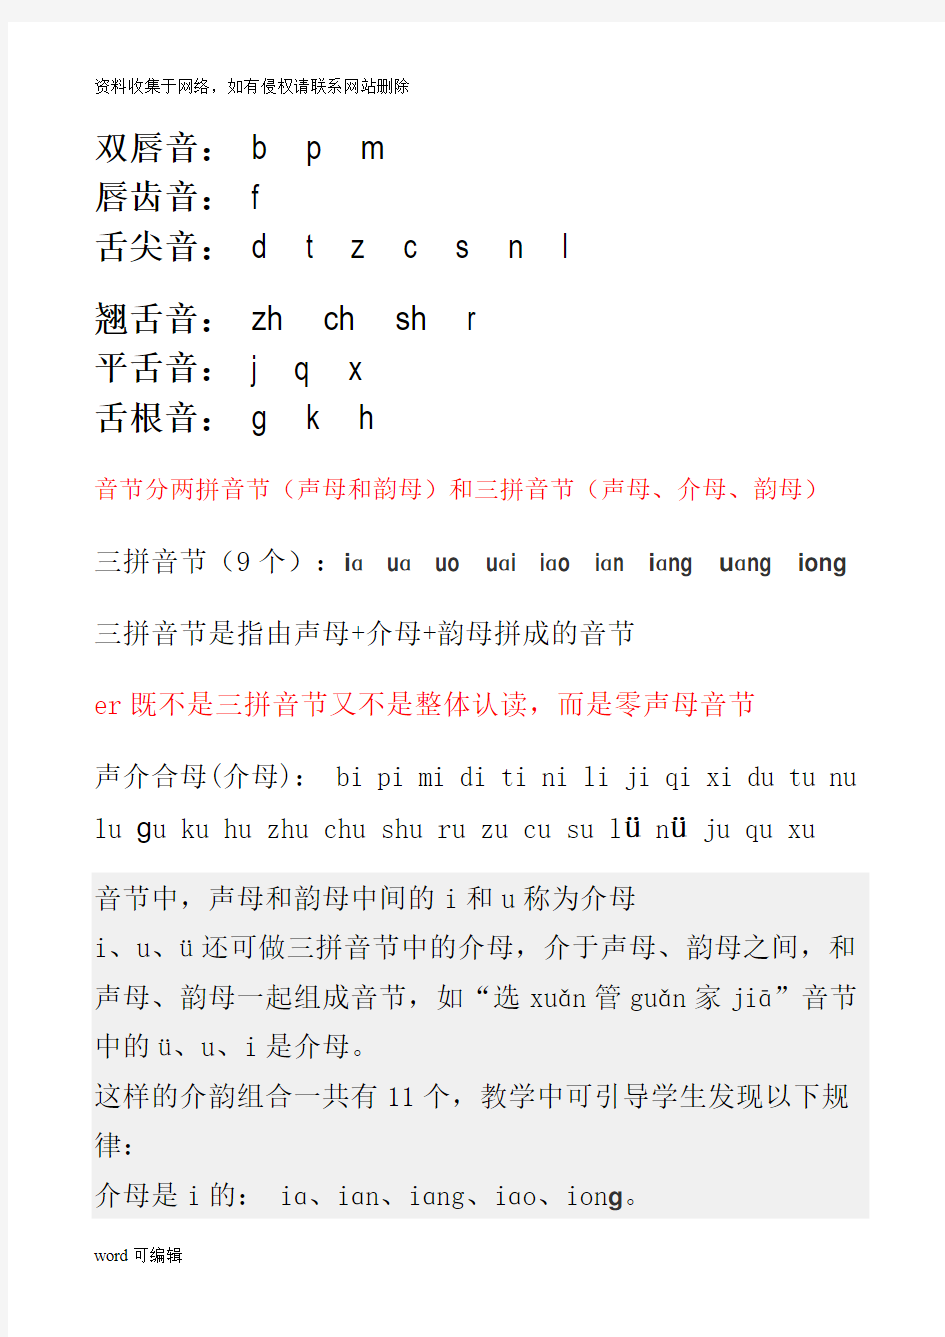 一年级汉语拼音字母表教学教材